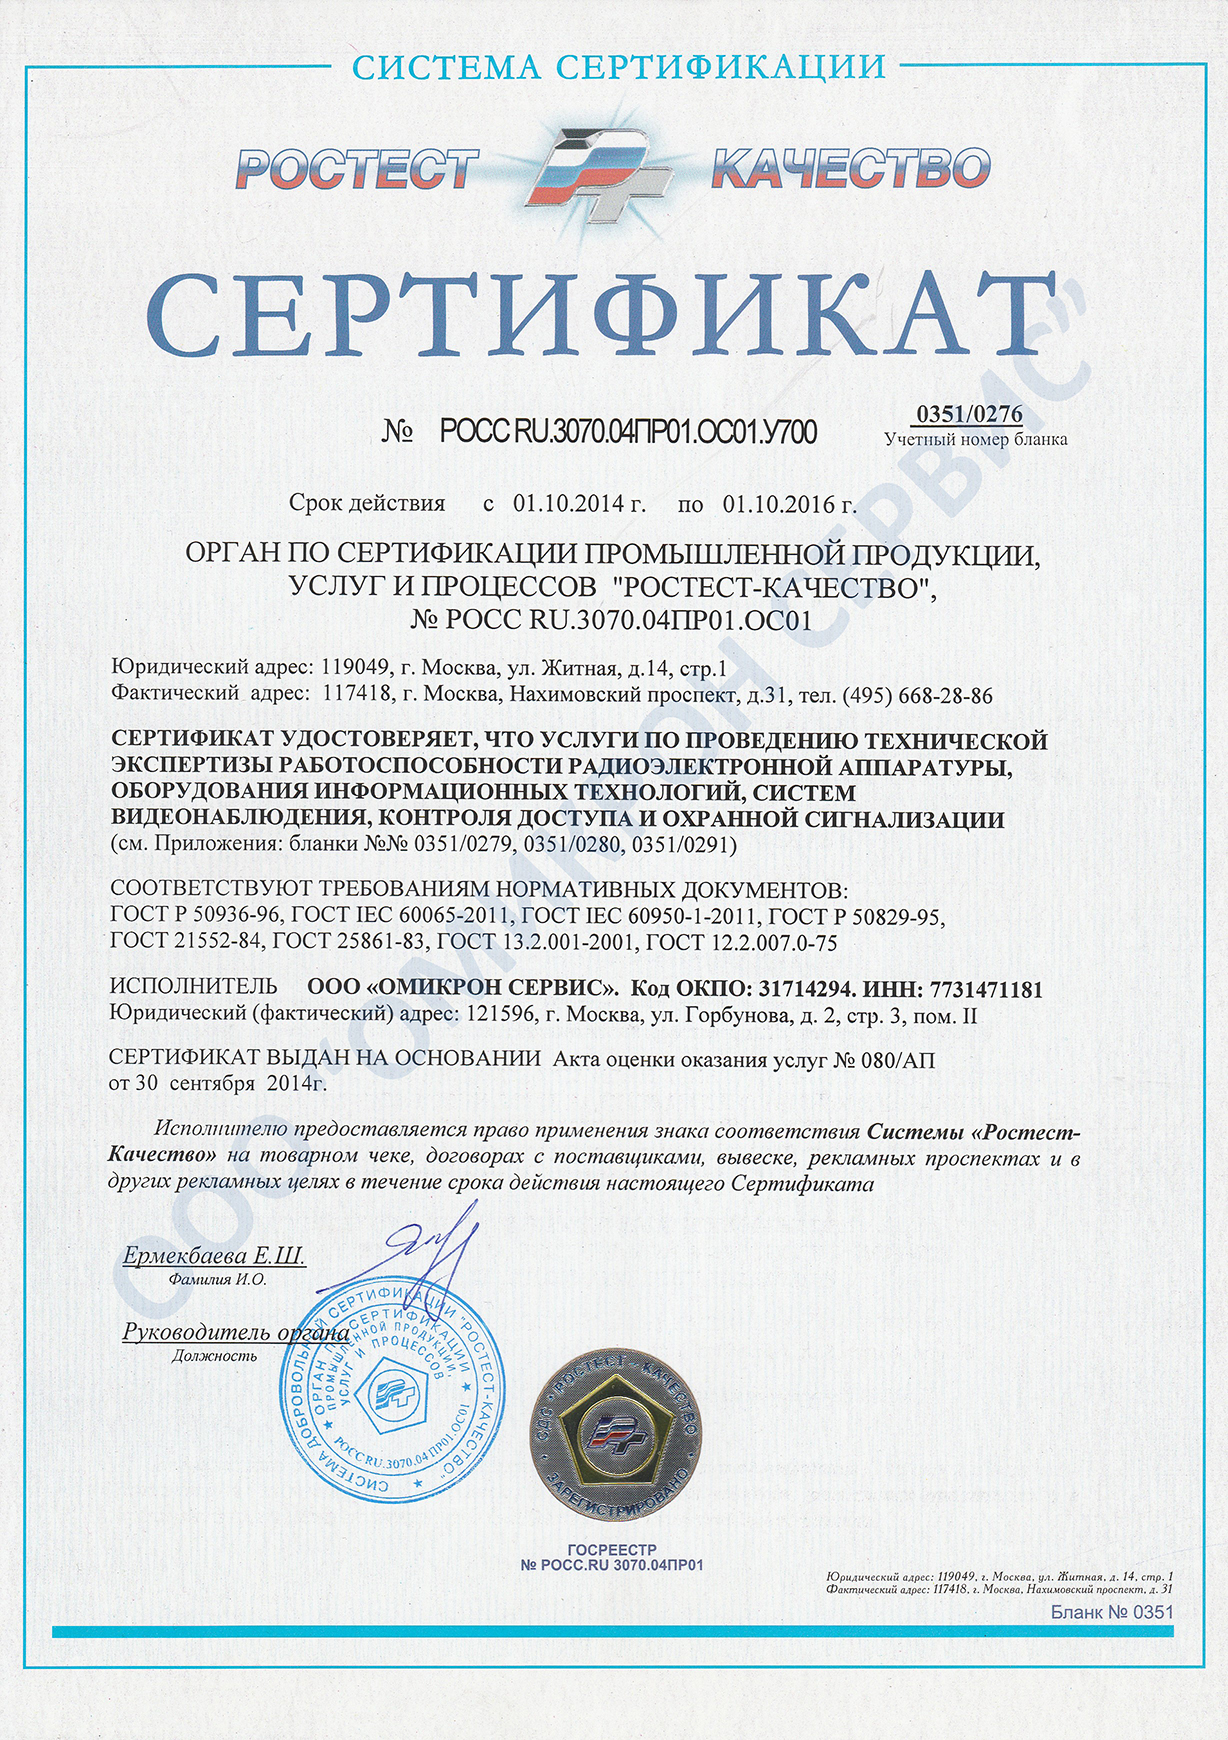 сертификат ростест-качество на проведение технической экспертизы работоспособности слаботочных систем